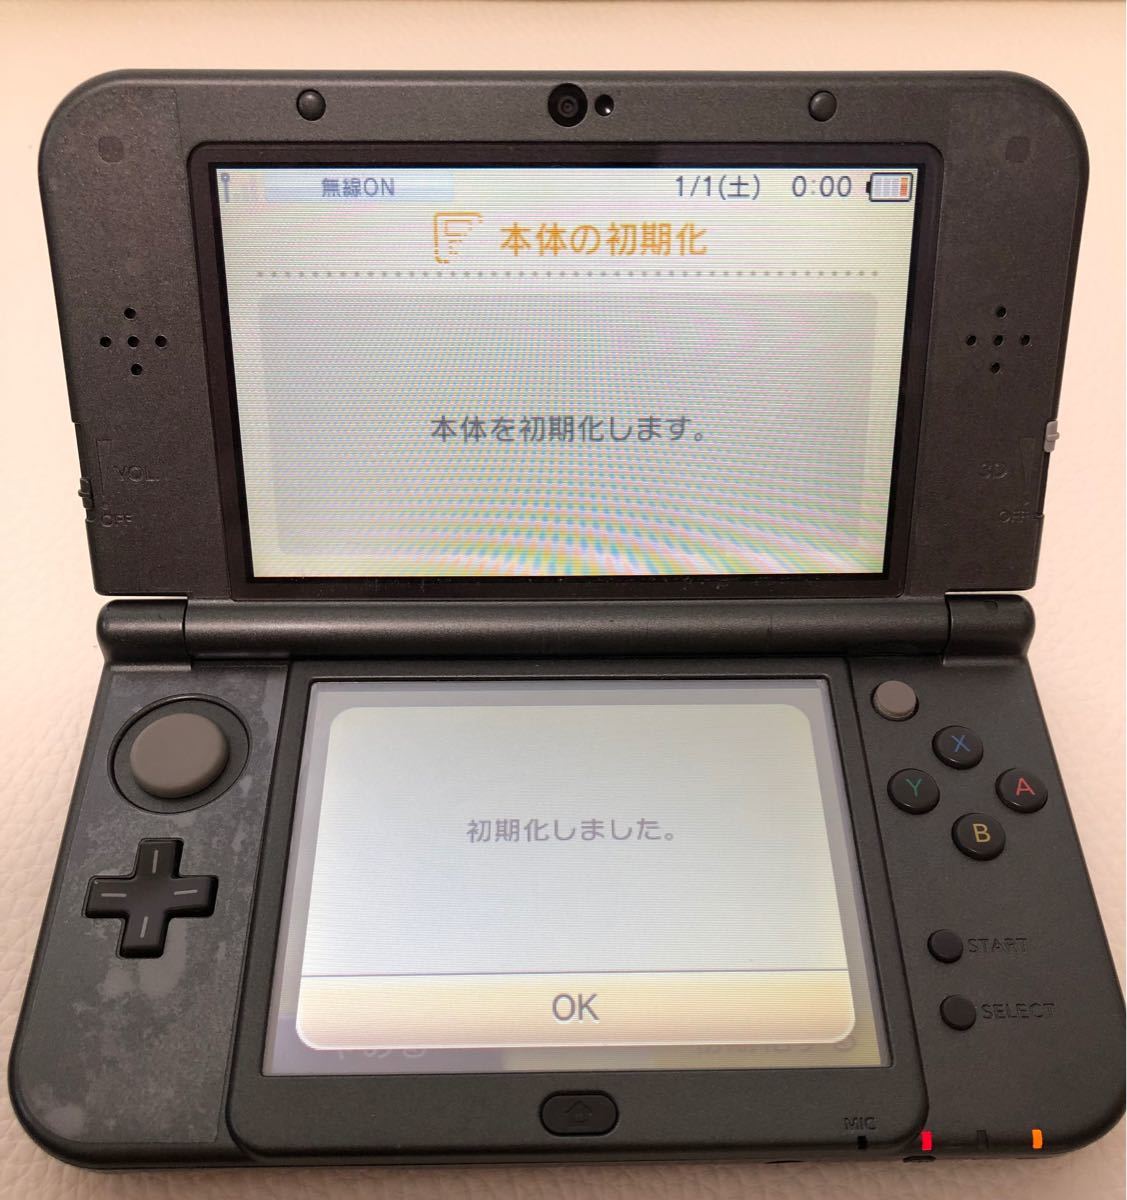 New ニンテンドー3DS LL 付属品完備  ACアダプター 任天堂3DS RED-001メタリックブラック 黒 ハードケース